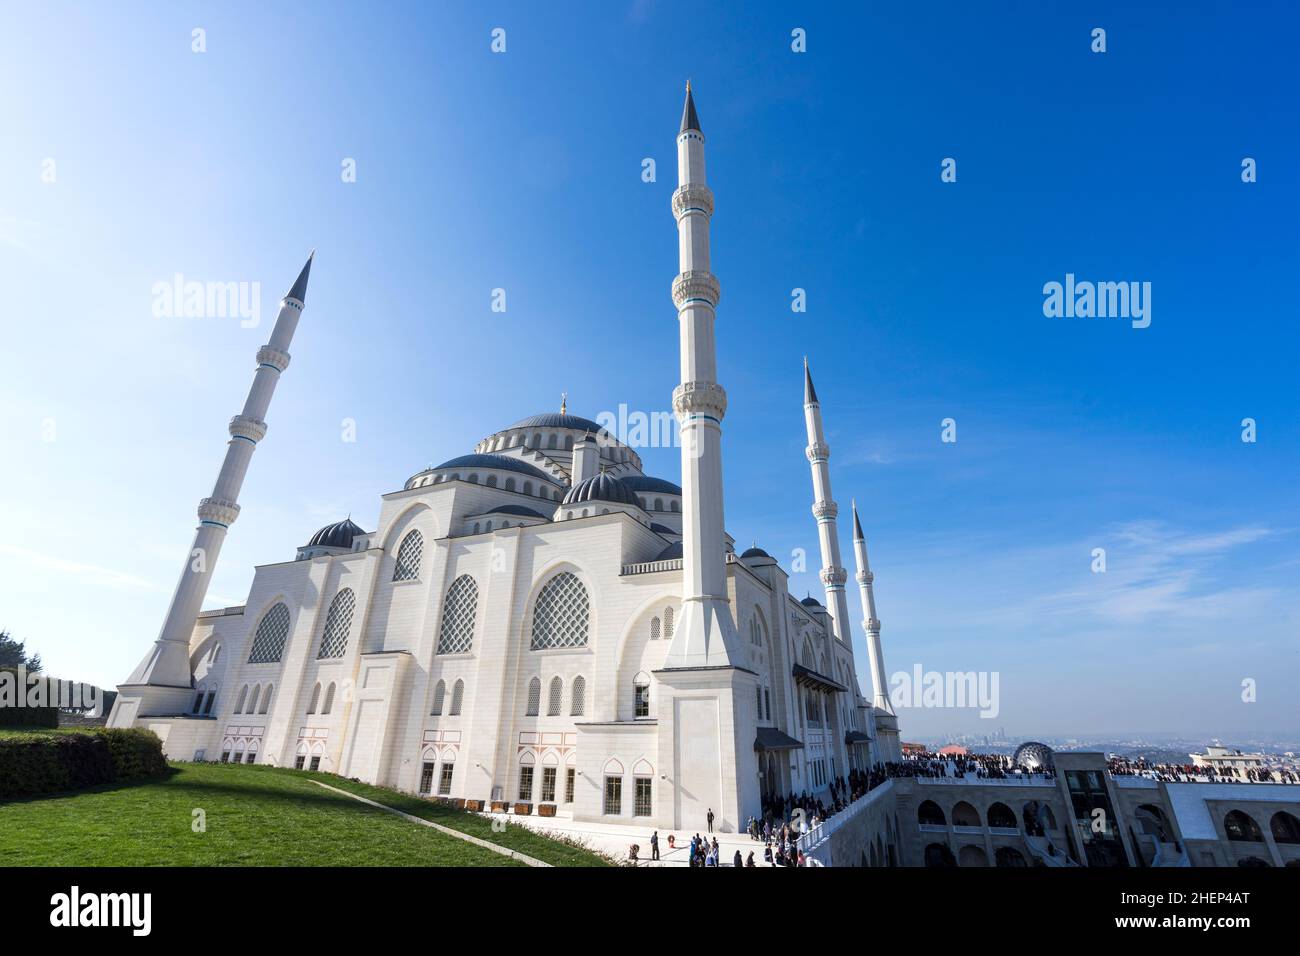 Una vista panoramica della Moschea Camlica di Istanbul. La moschea di Camlica è la più grande moschea della Turchia. Foto Stock